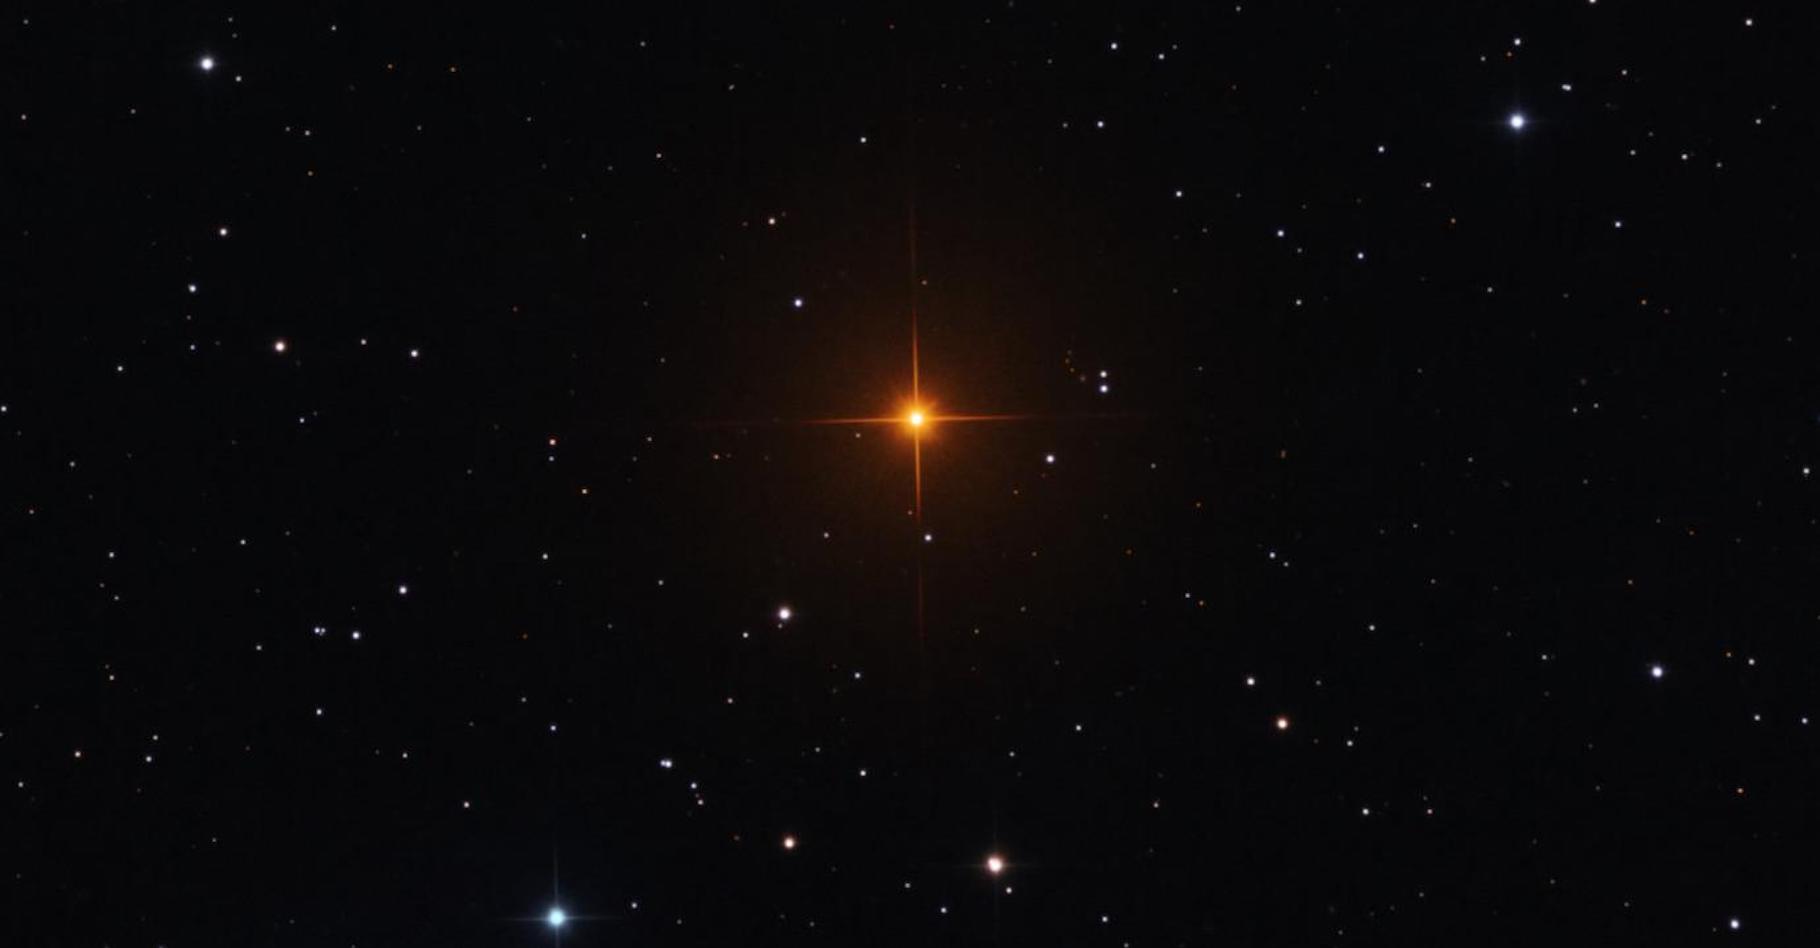 R Leporis, cette étoile rouge orangé brillante capturée ici&nbsp;est un exemple du type d’étoiles situées dans la branche asymptotique des géantes qui intéressent les astronomes de l’université de Chicago (États-Unis). La couleur frappante vient de la grande quantité de carbone dans son atmosphère. © Université de Chicago